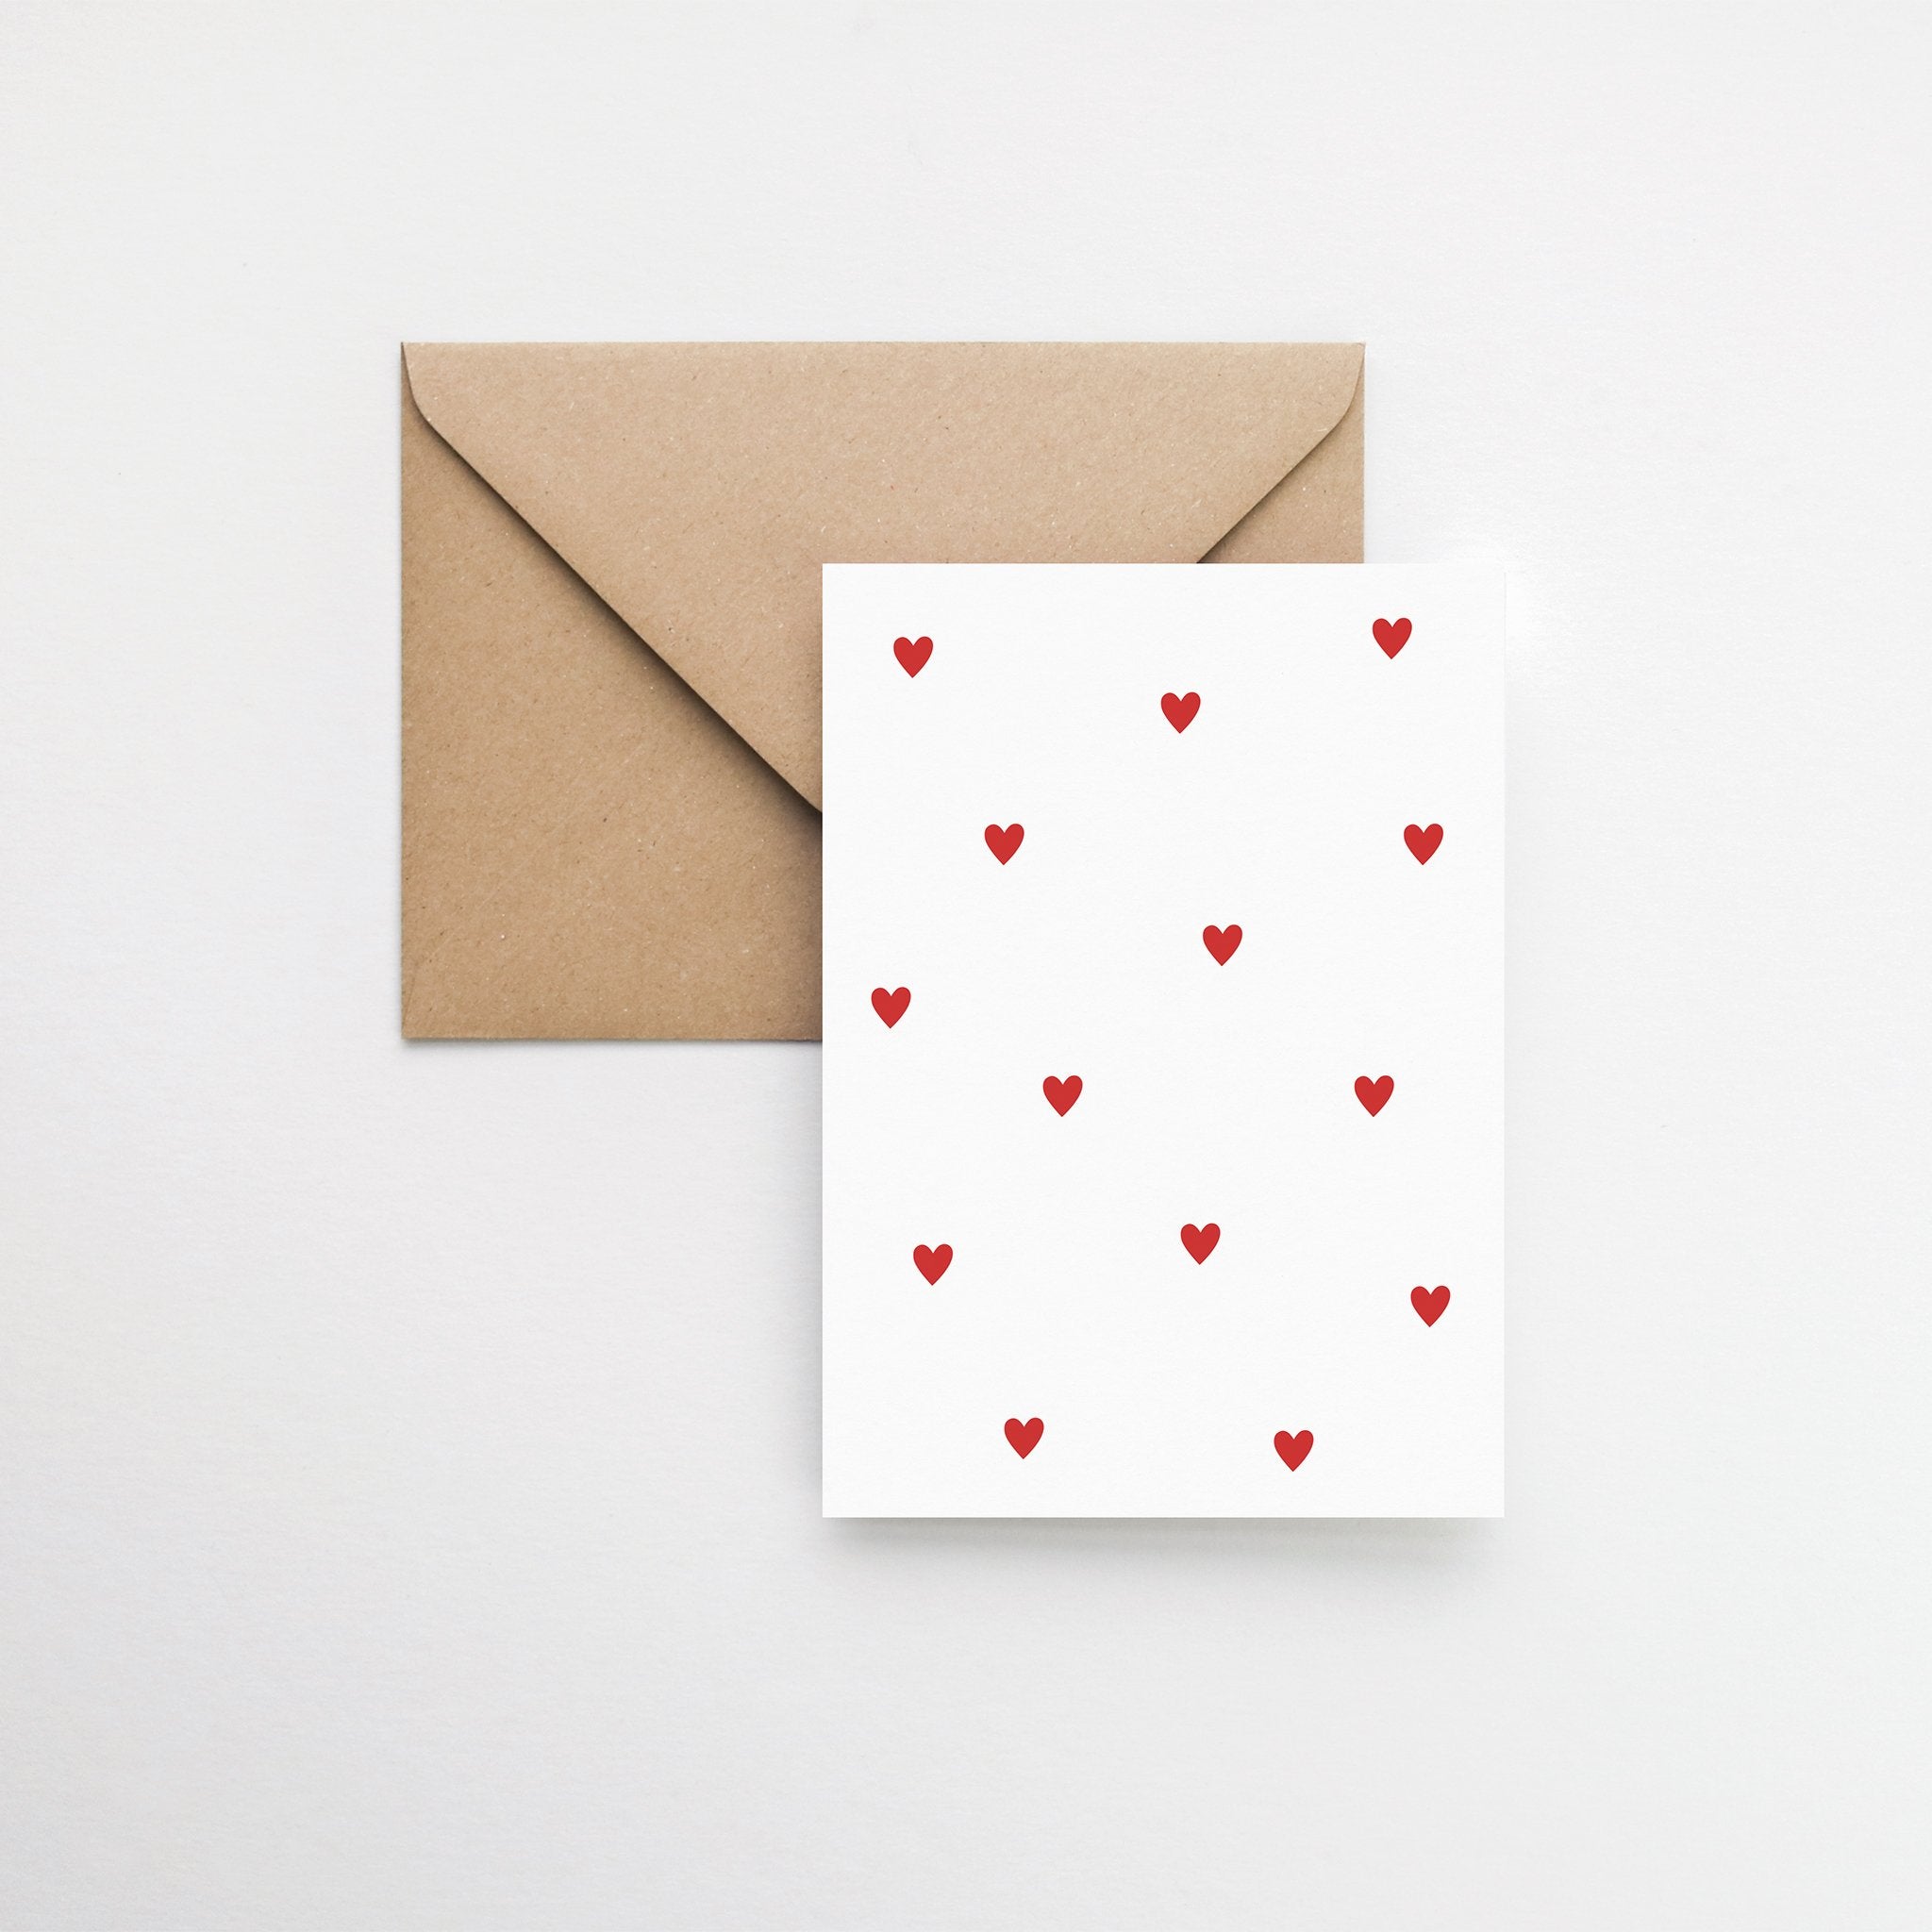 Heart pattern minimalist greeting card